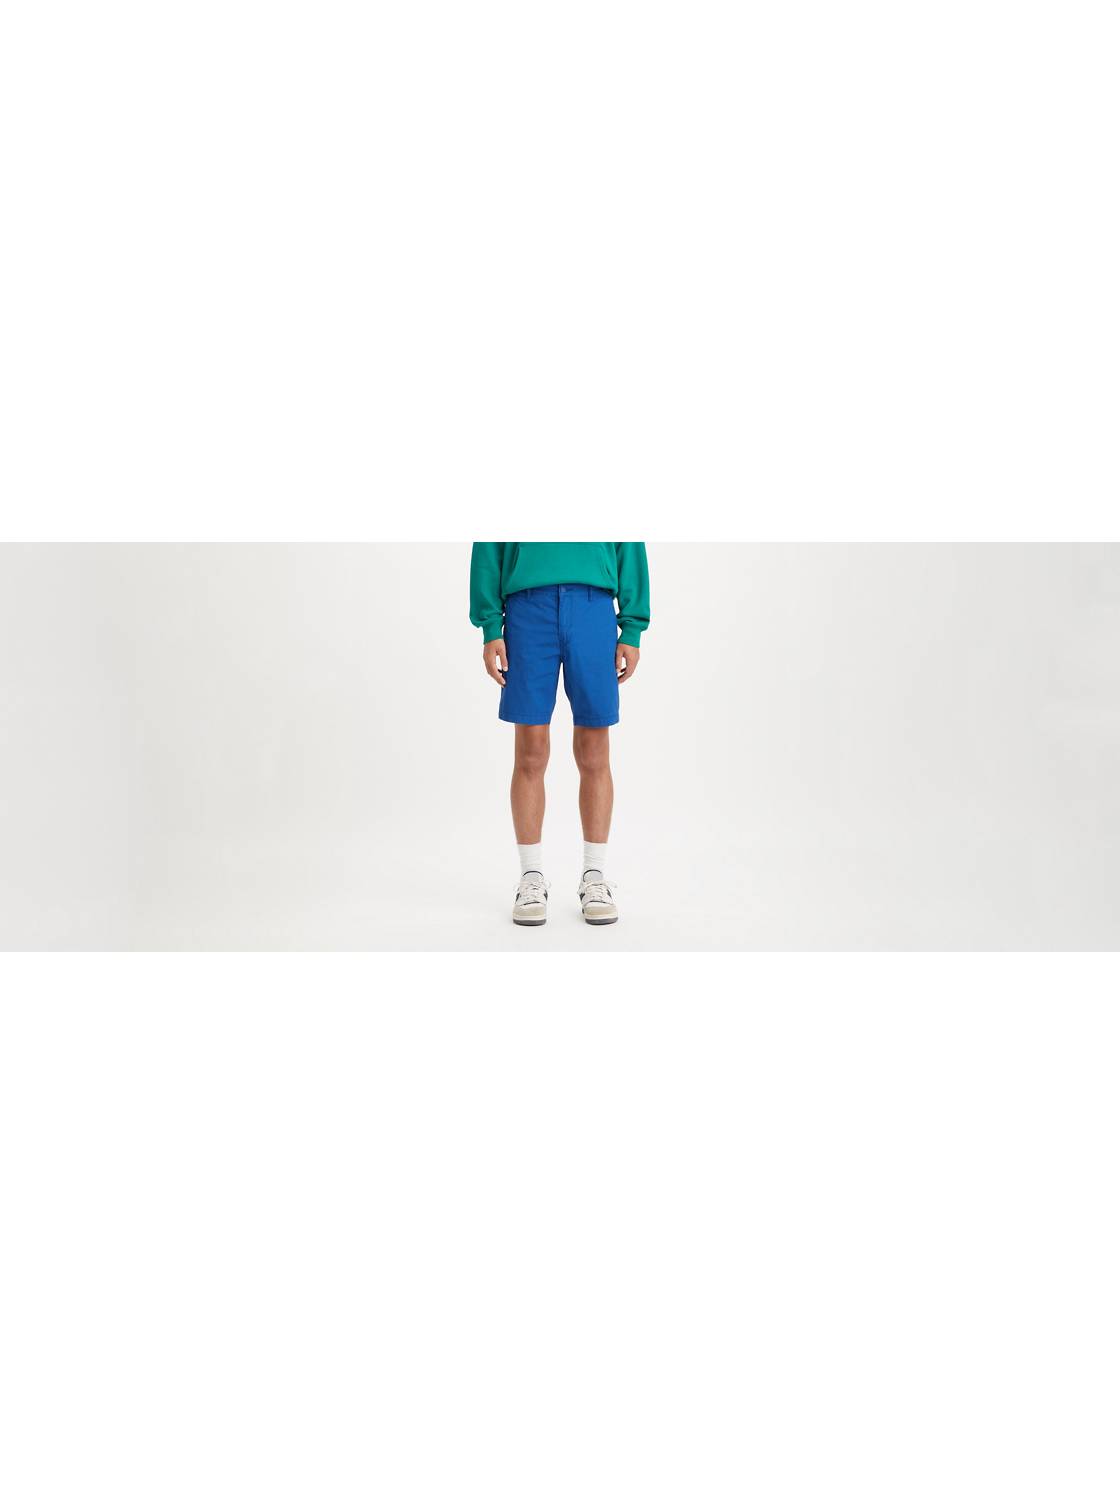 XX Chino Shorts III 1